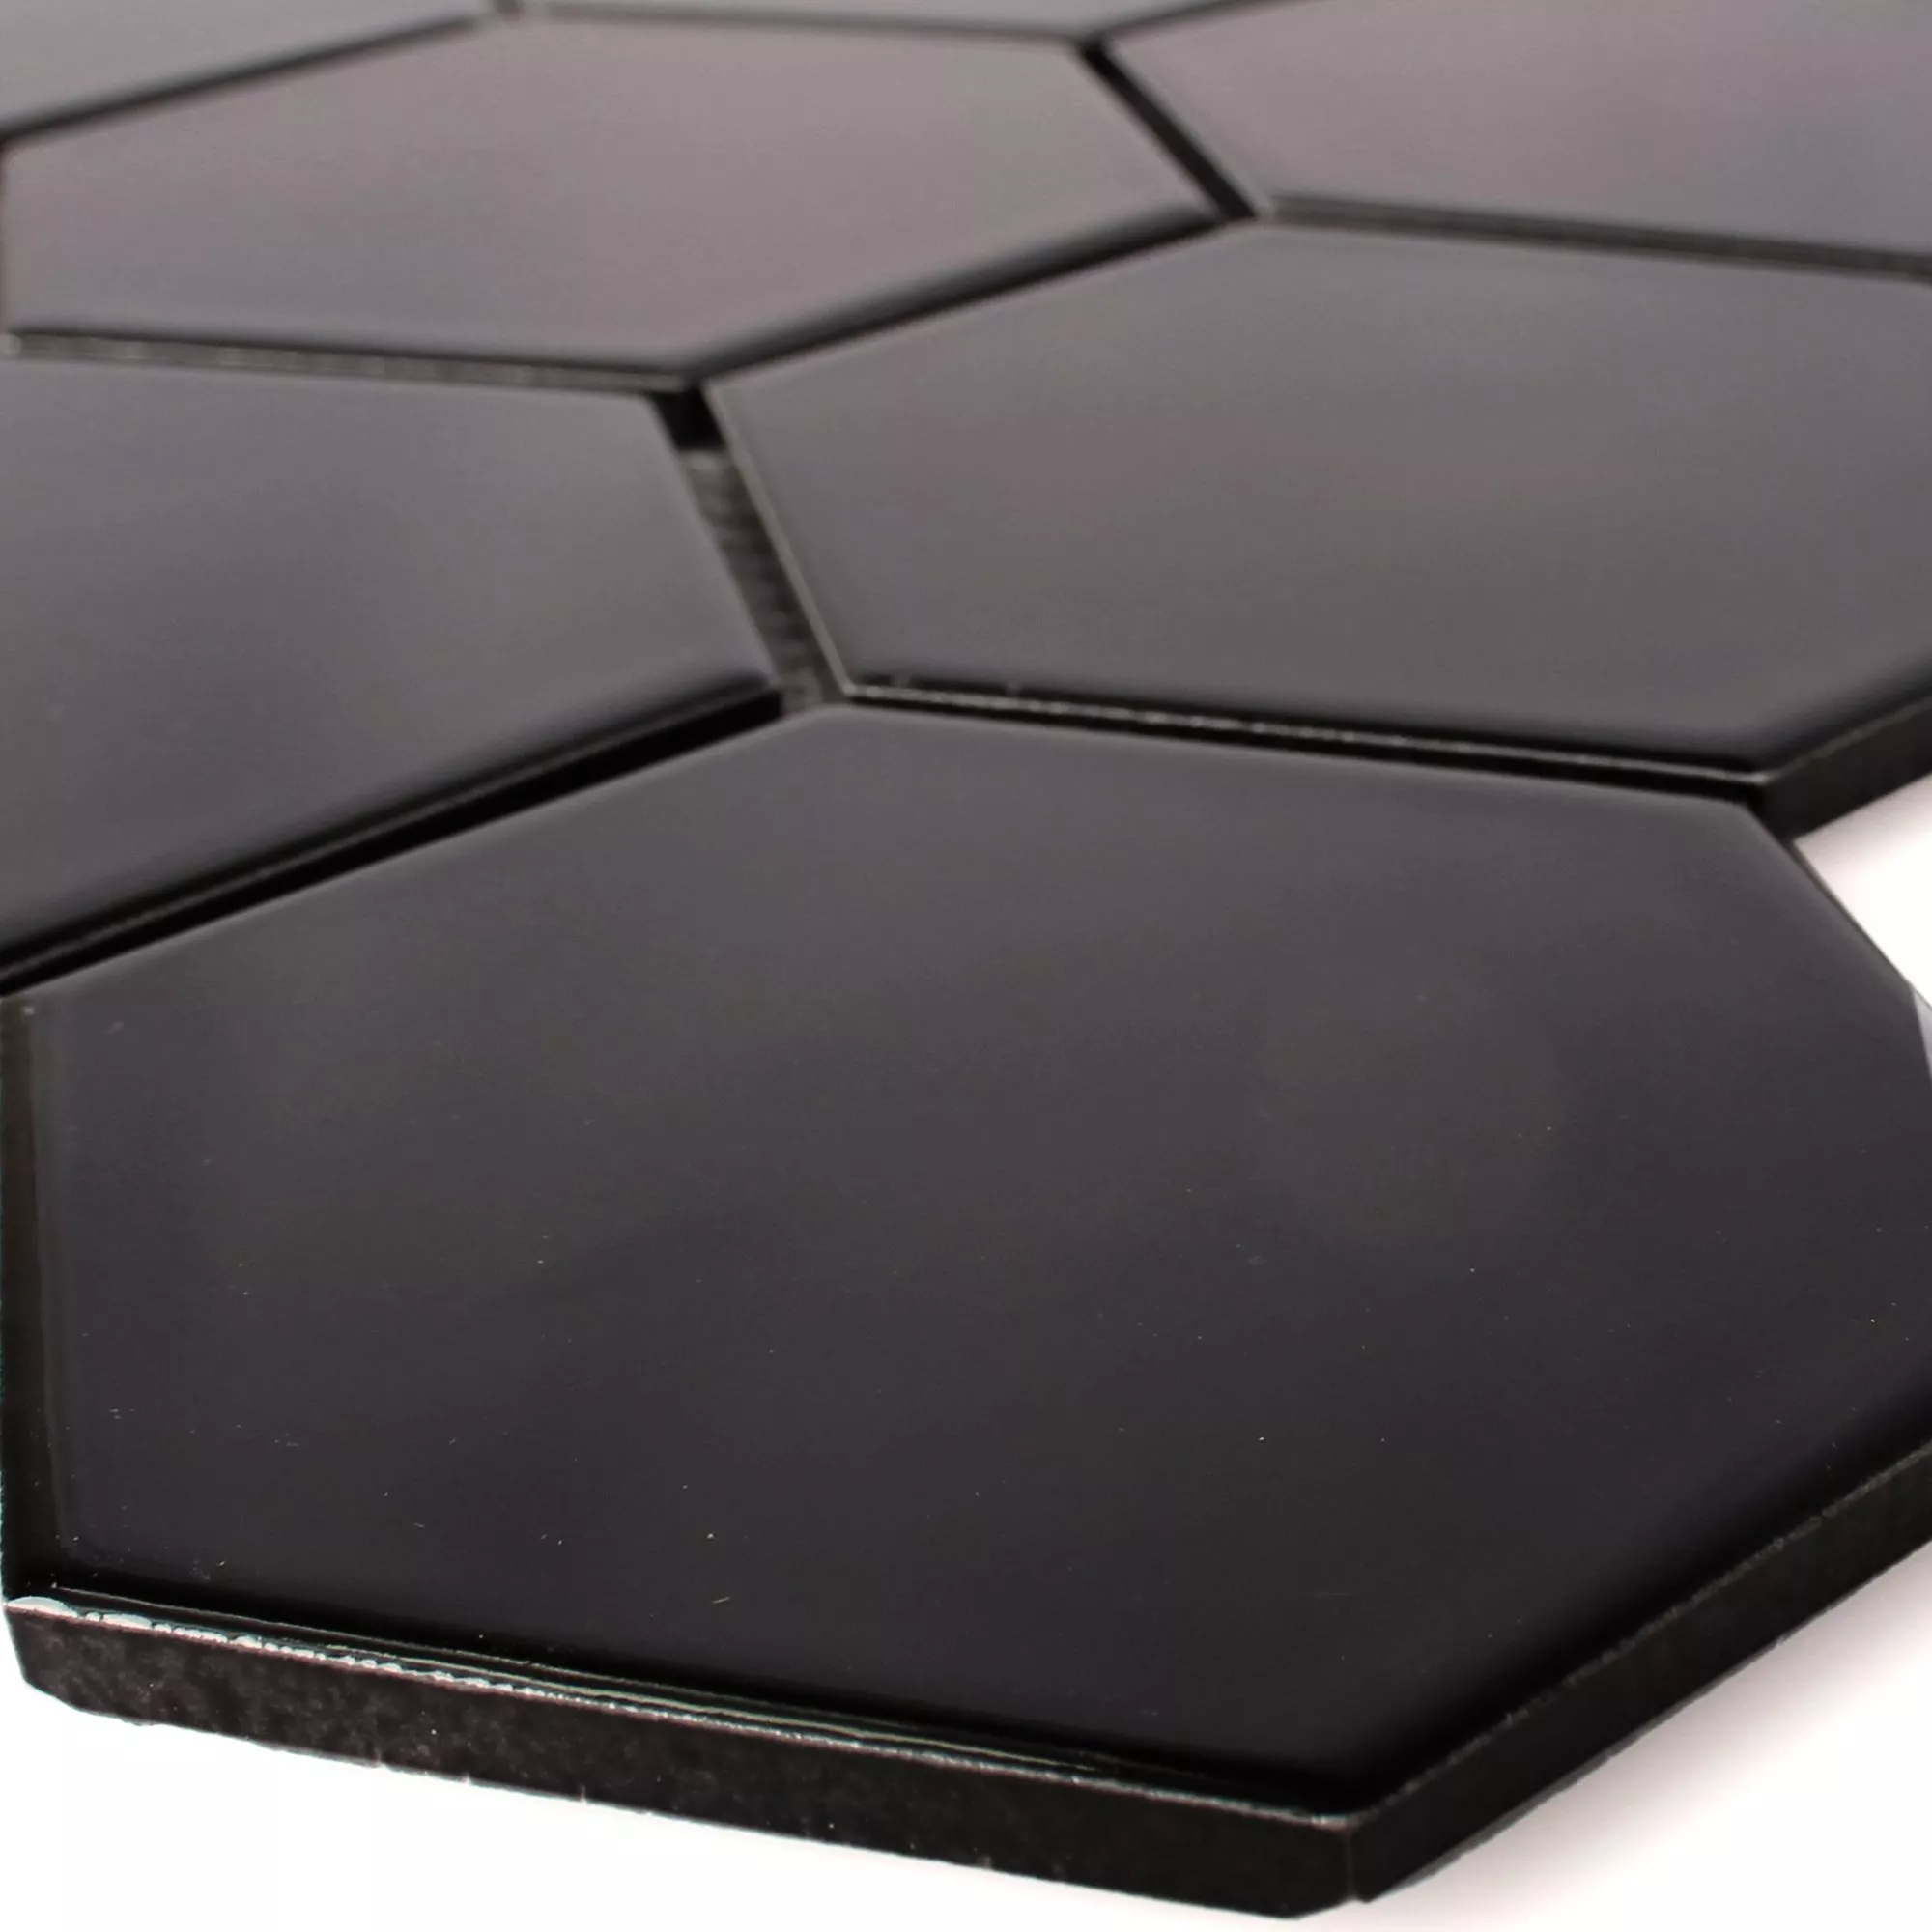 Prov Keramik Mosaik Hexagon Salamanca Svart Matt H95